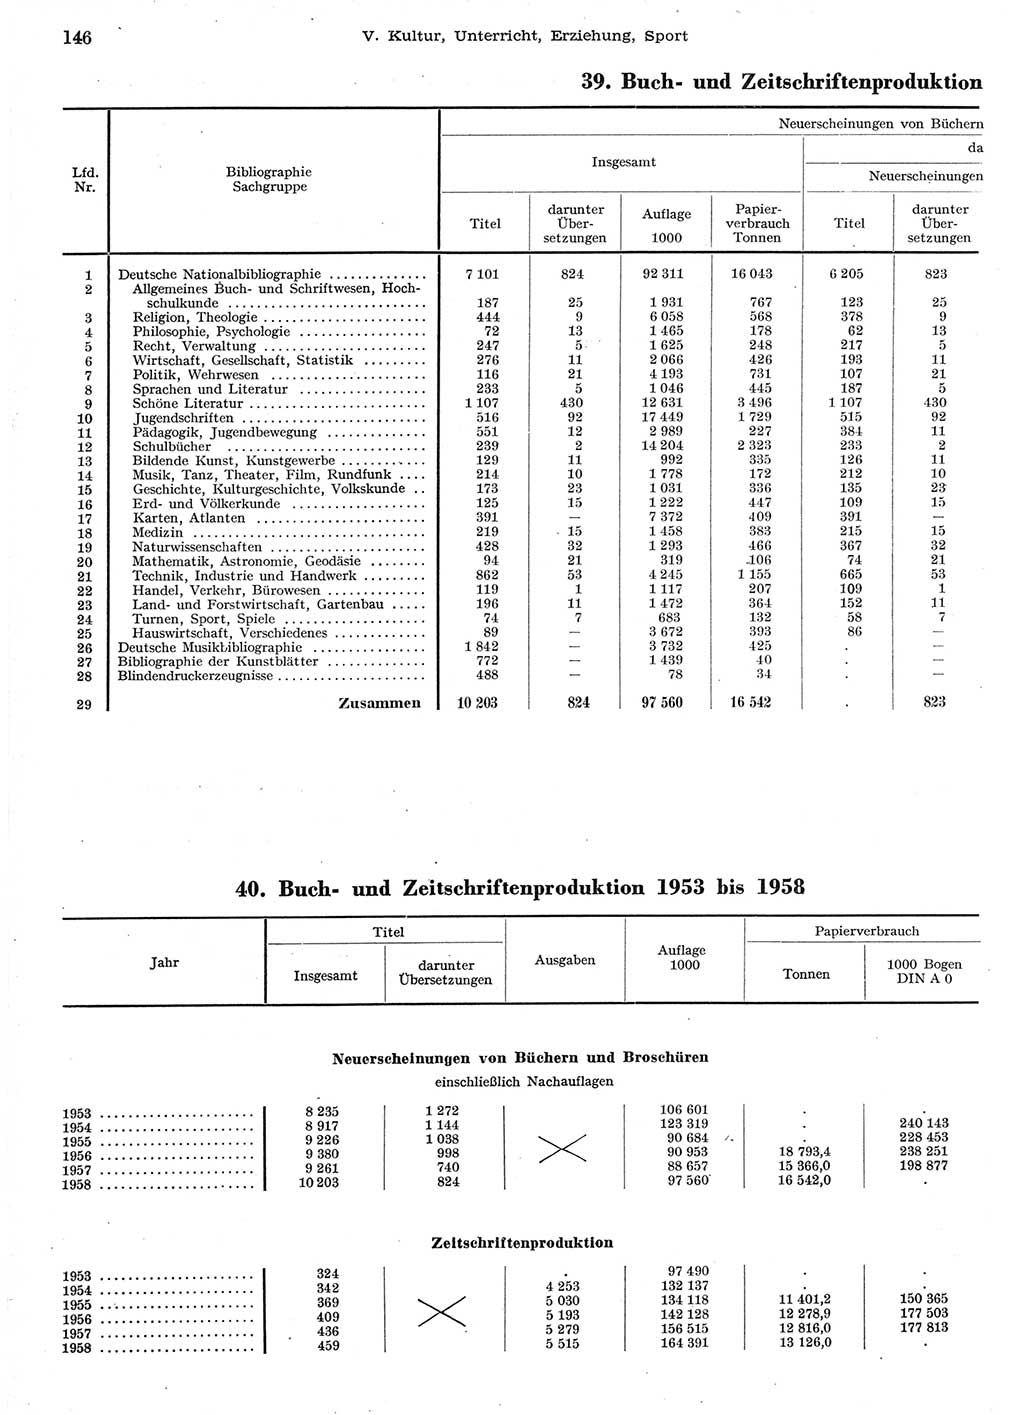 Statistisches Jahrbuch der Deutschen Demokratischen Republik (DDR) 1958, Seite 146 (Stat. Jb. DDR 1958, S. 146)